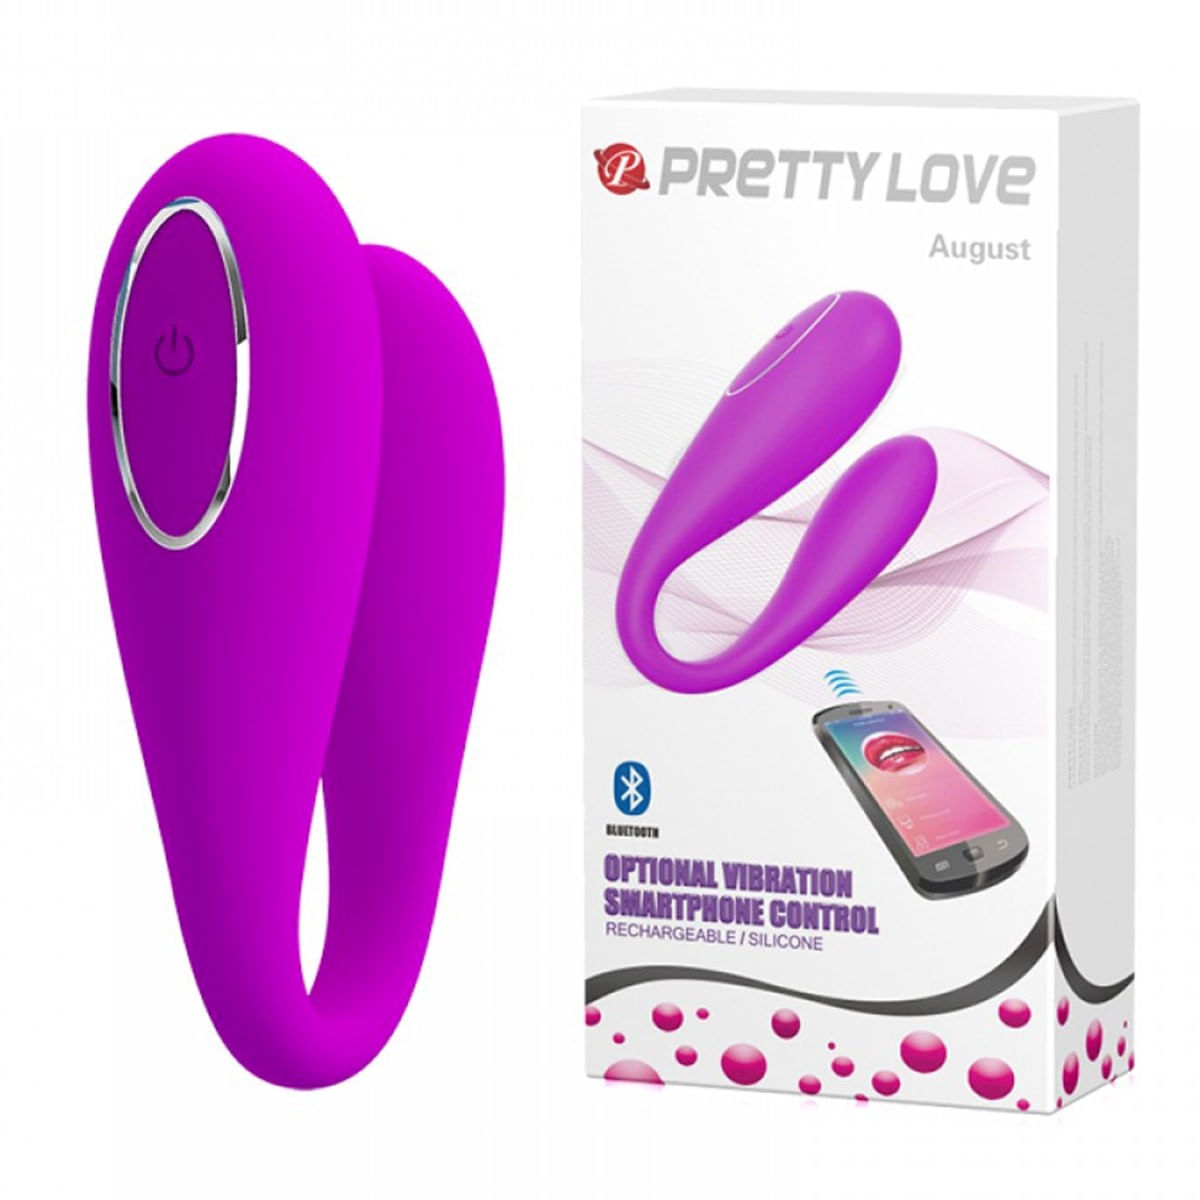 Pretty Love August Vibrador de Casal com 12 Modos de Vibrações por Controle Bluetooth